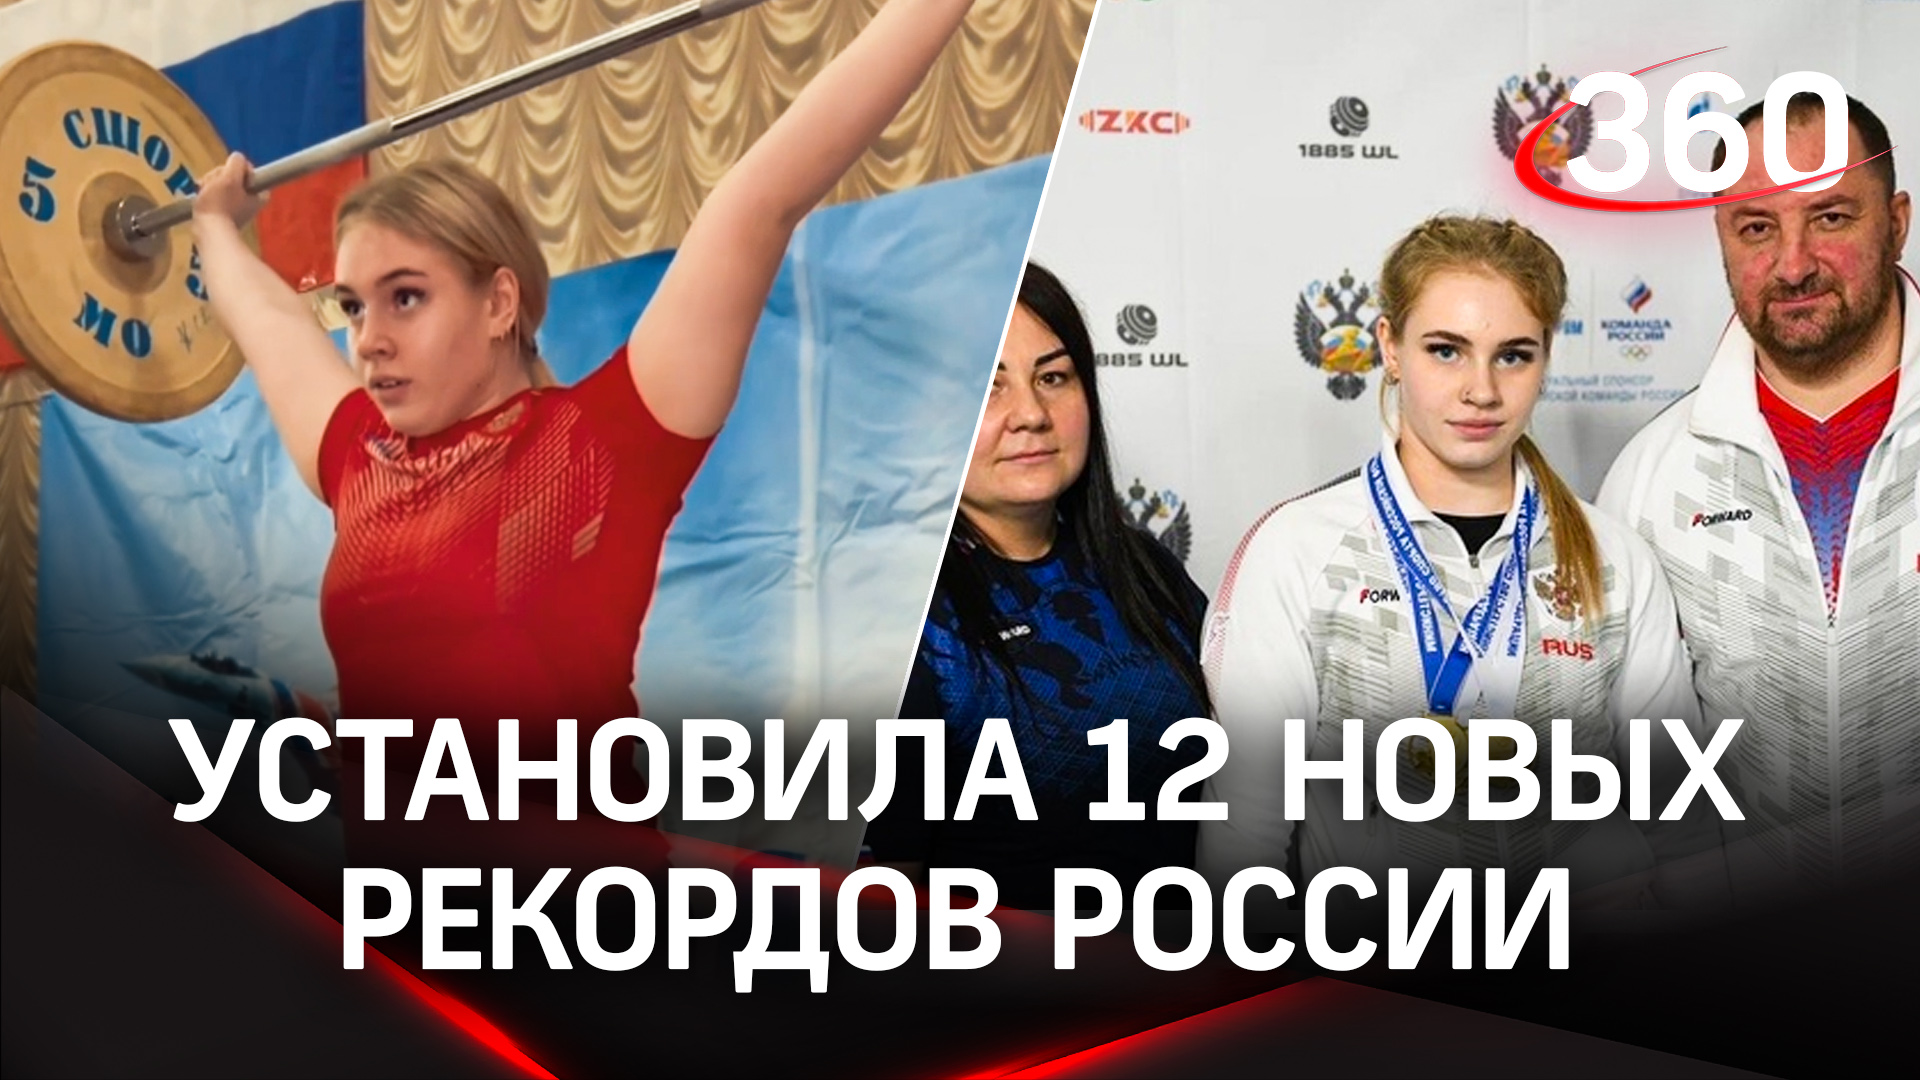 14‑летняя спортсменка из Подмосковья установила 12 новых рекордов РФ по тяжёлой атлетике